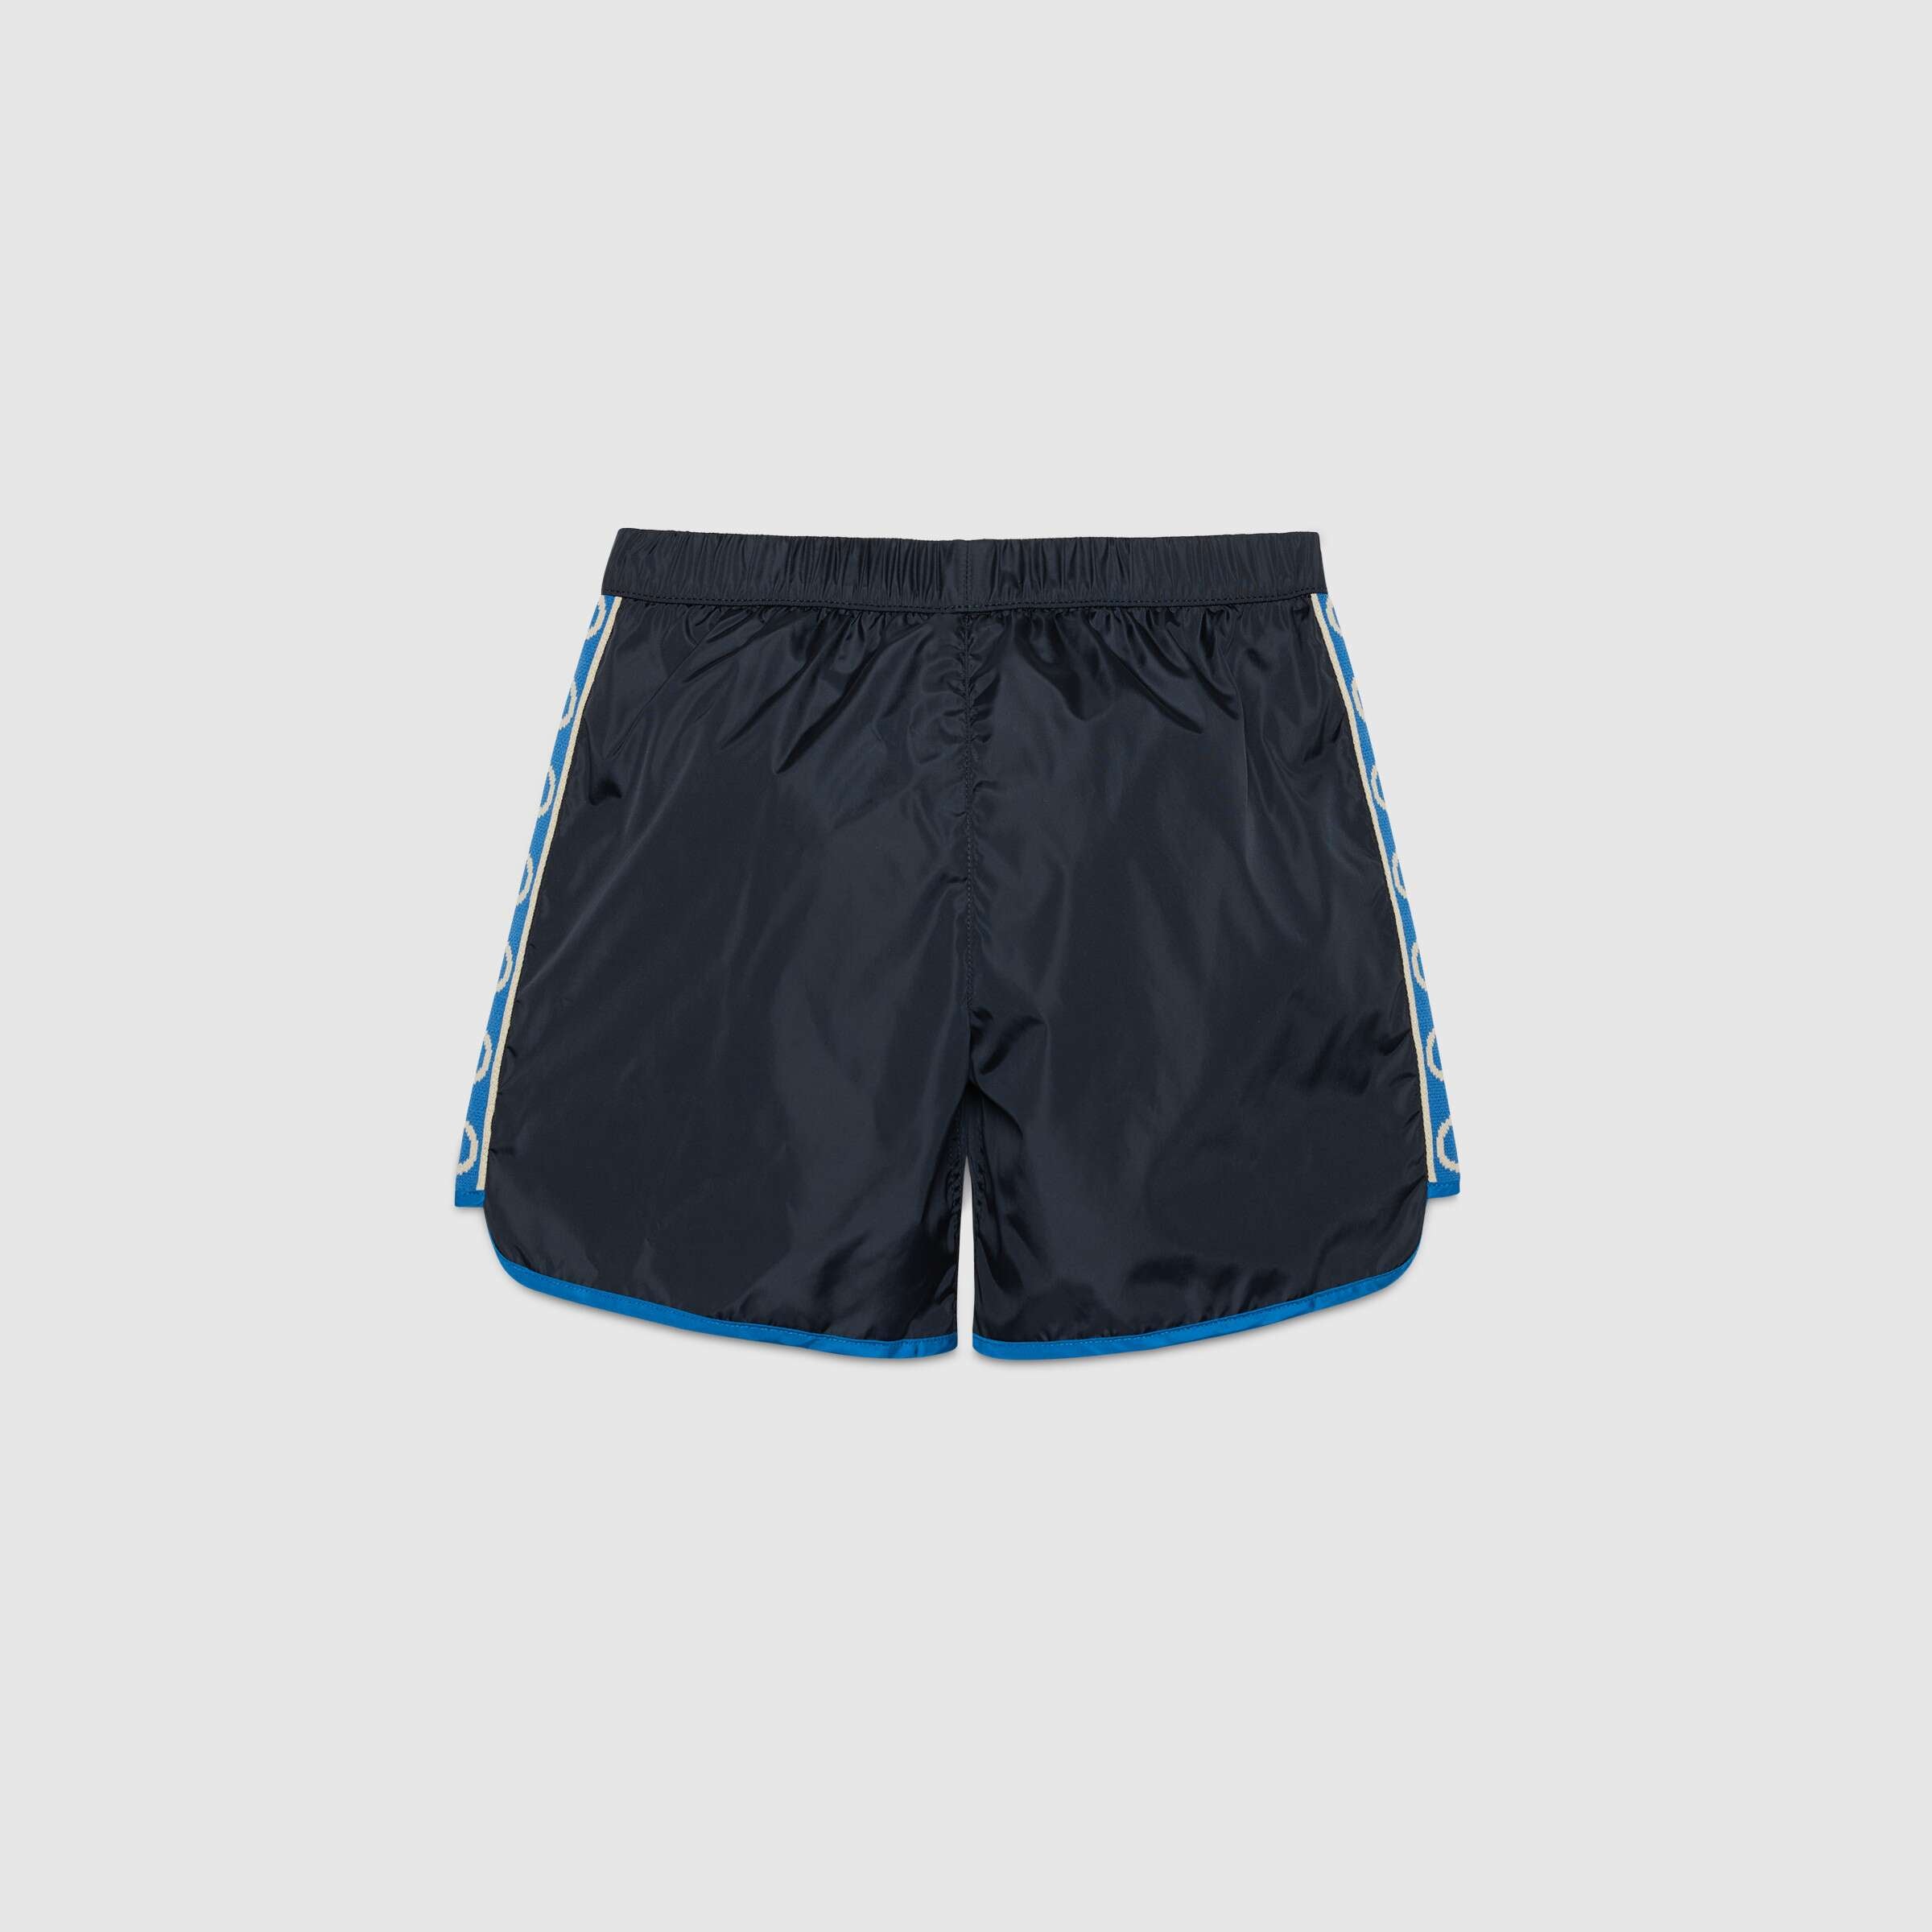 Boys Navy Swim Shorts